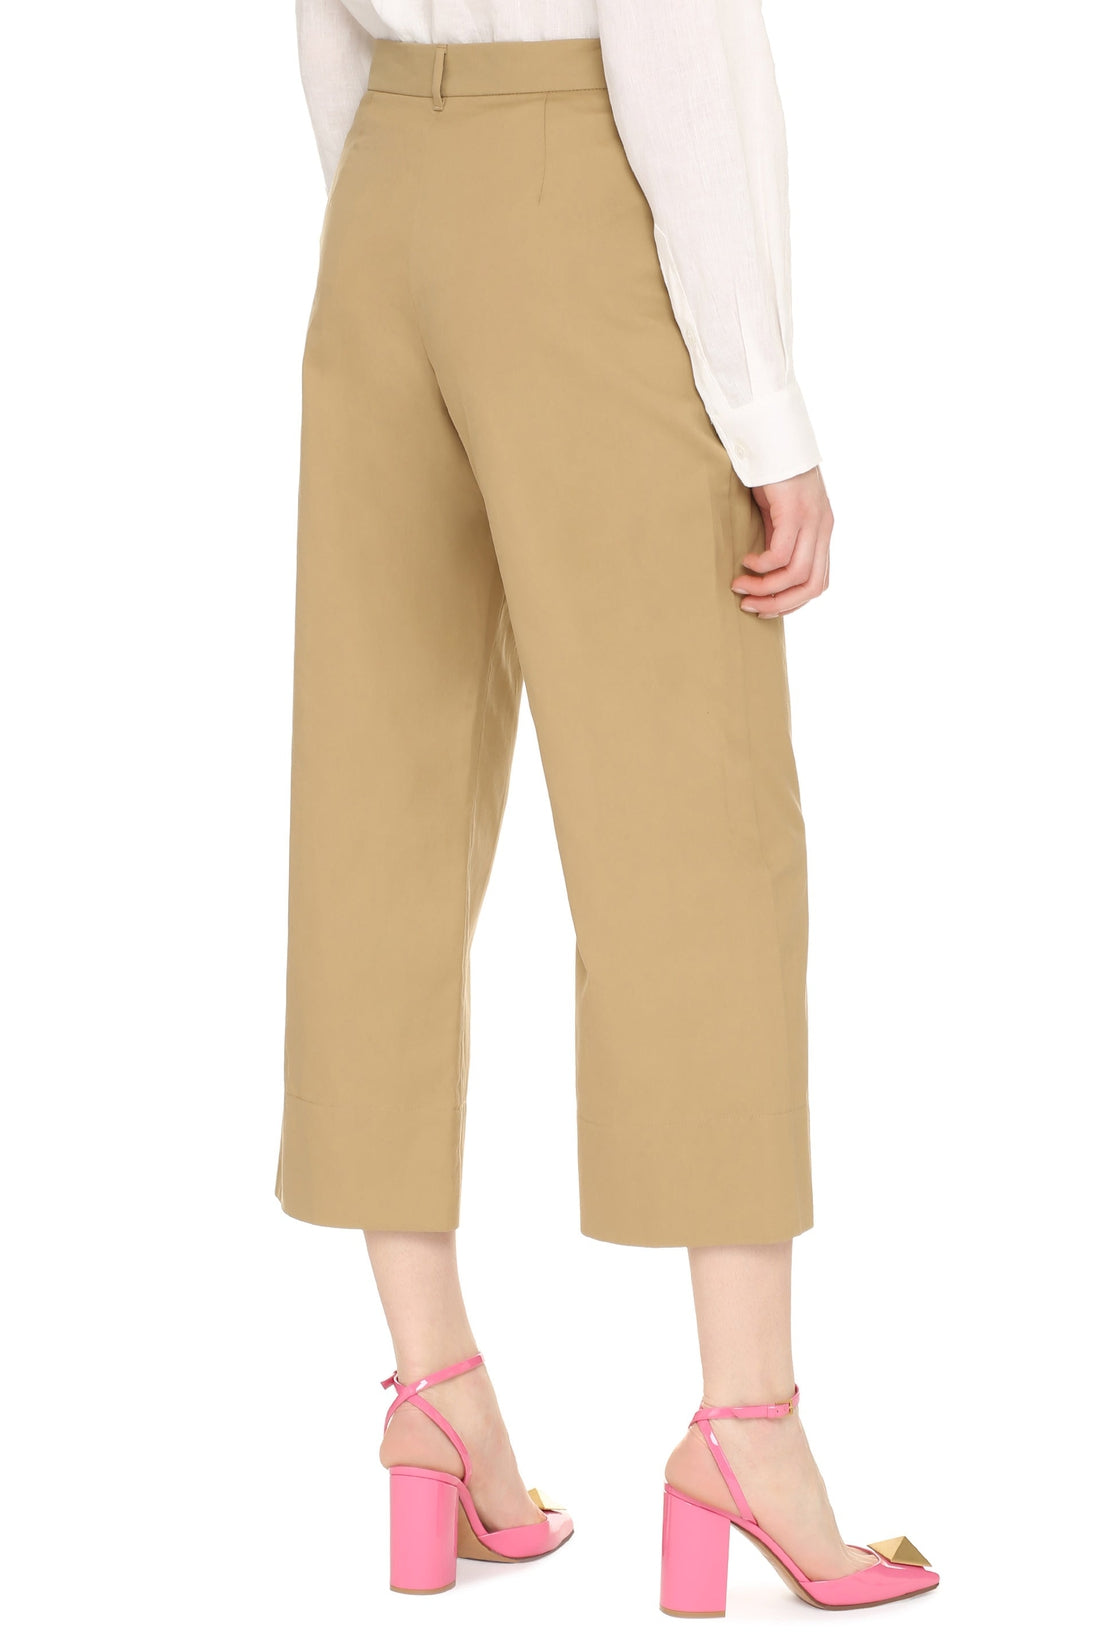 S MAX MARA-OUTLET-SALE-Cotton gabardine trousers-ARCHIVIST